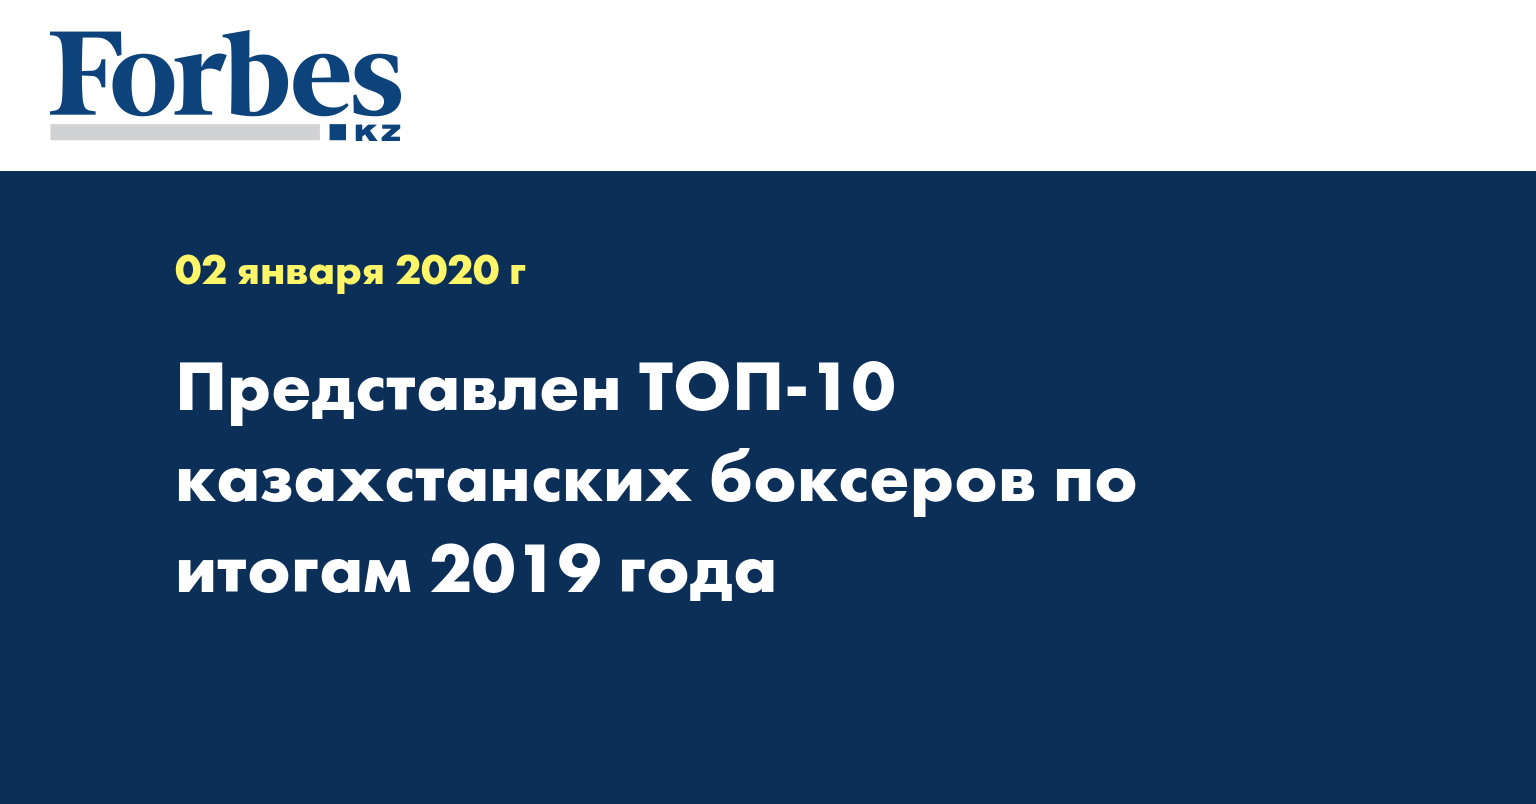 Представлен топ-10 казахстанских боксеров по итогам 2019